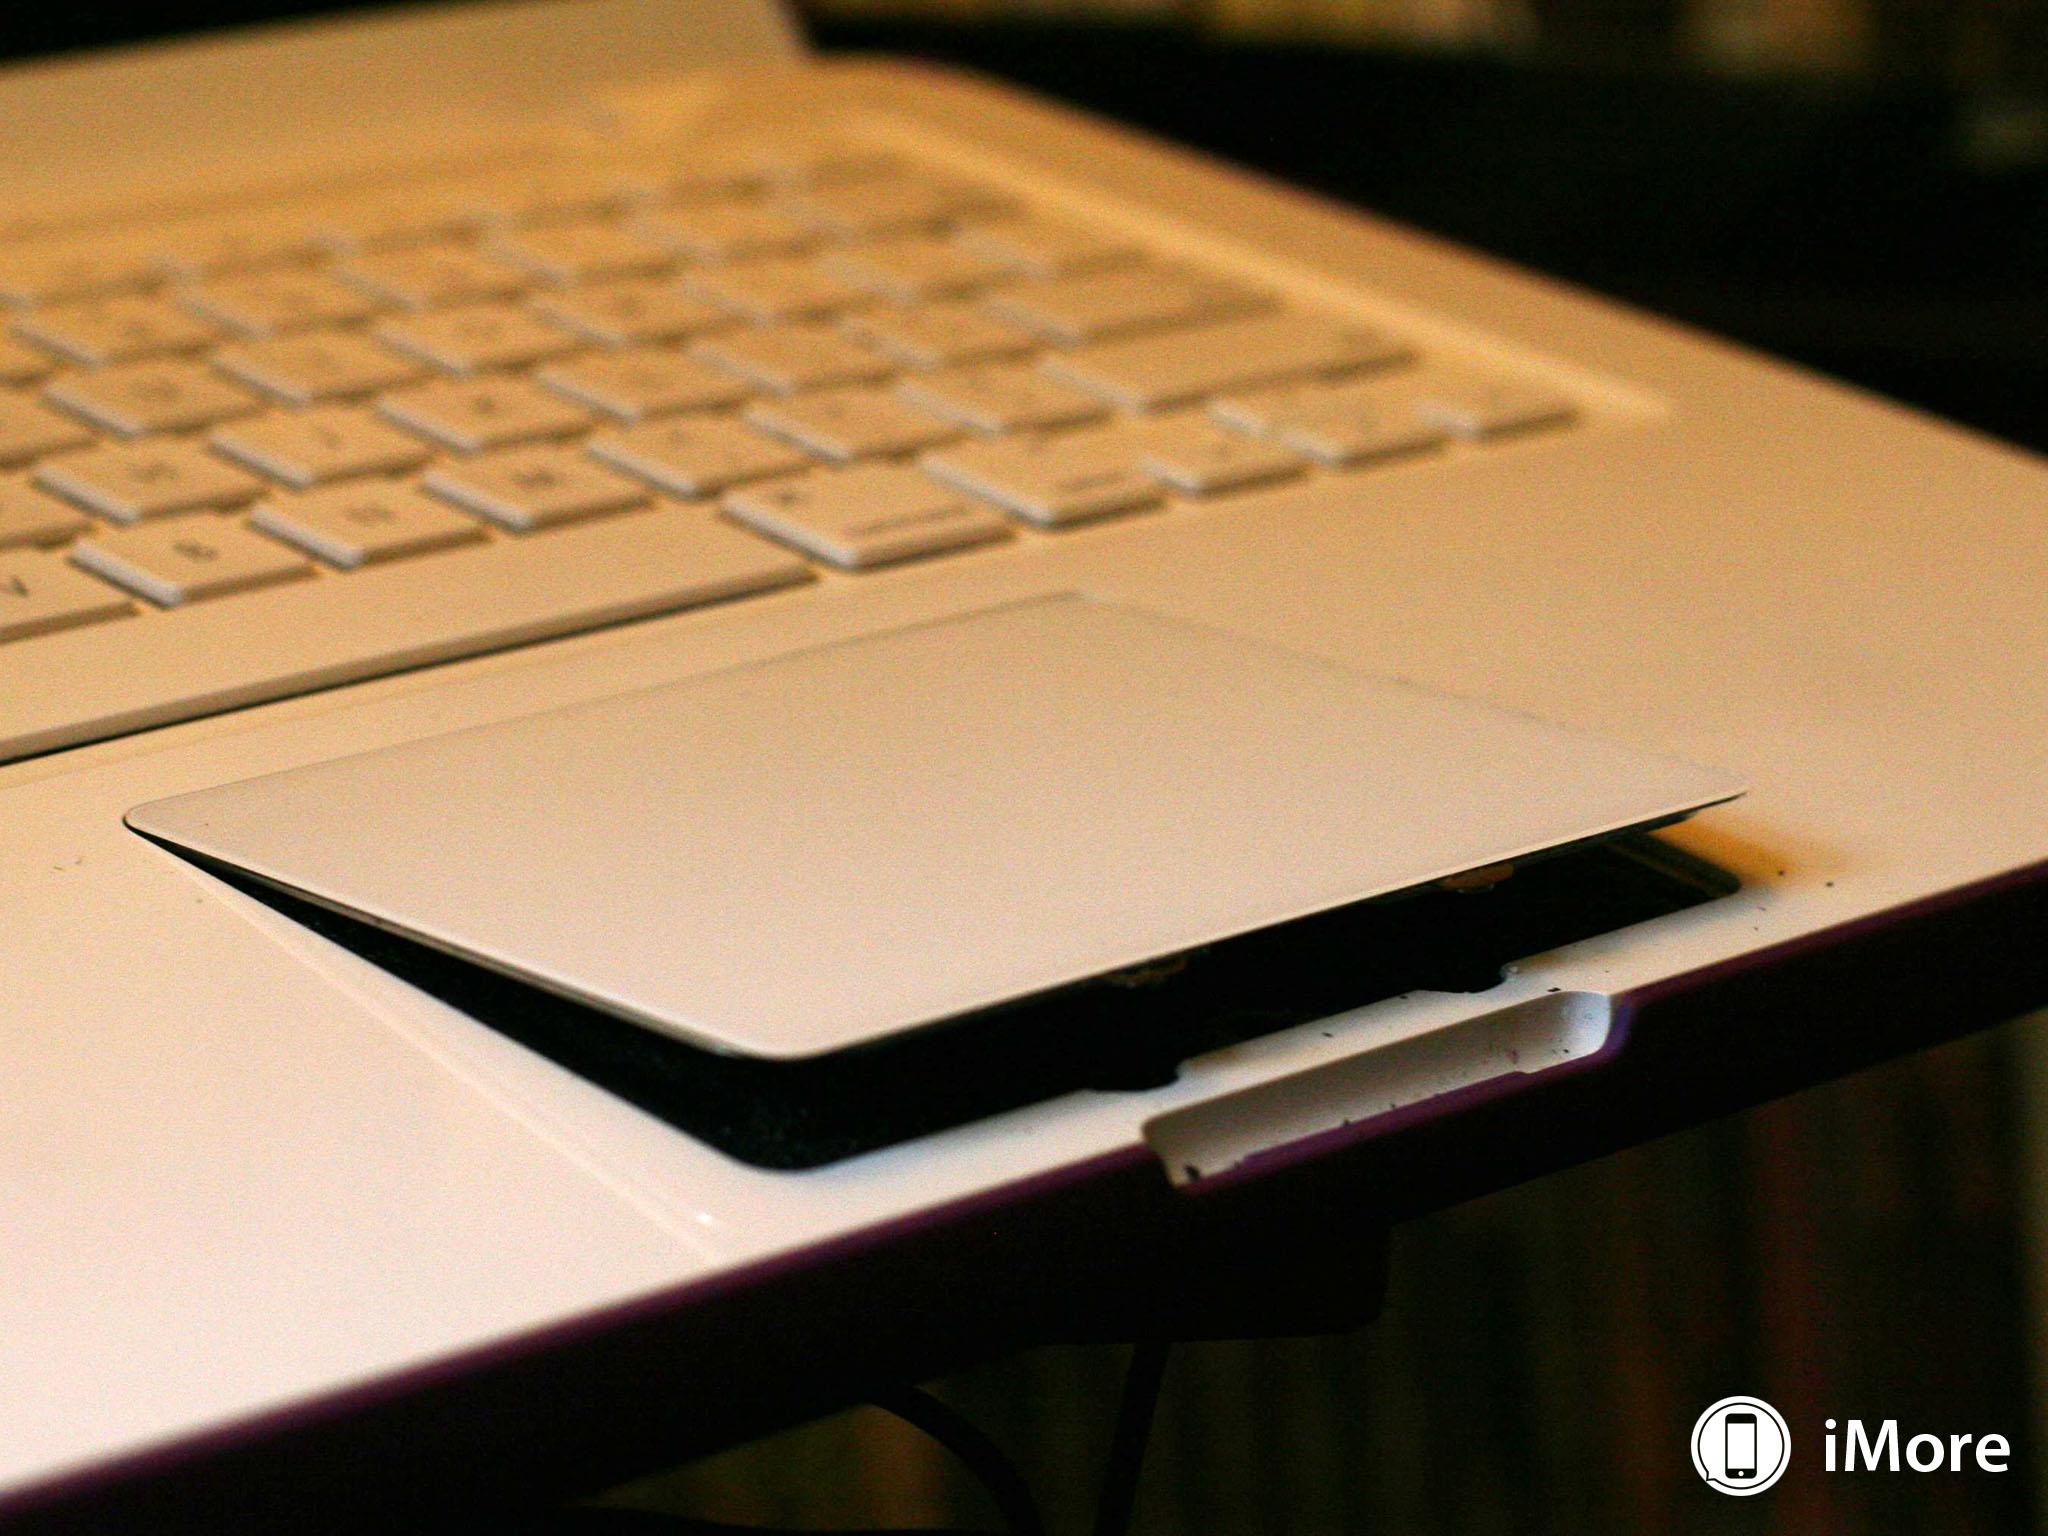 Thinner MacBooks make bigger battery problems